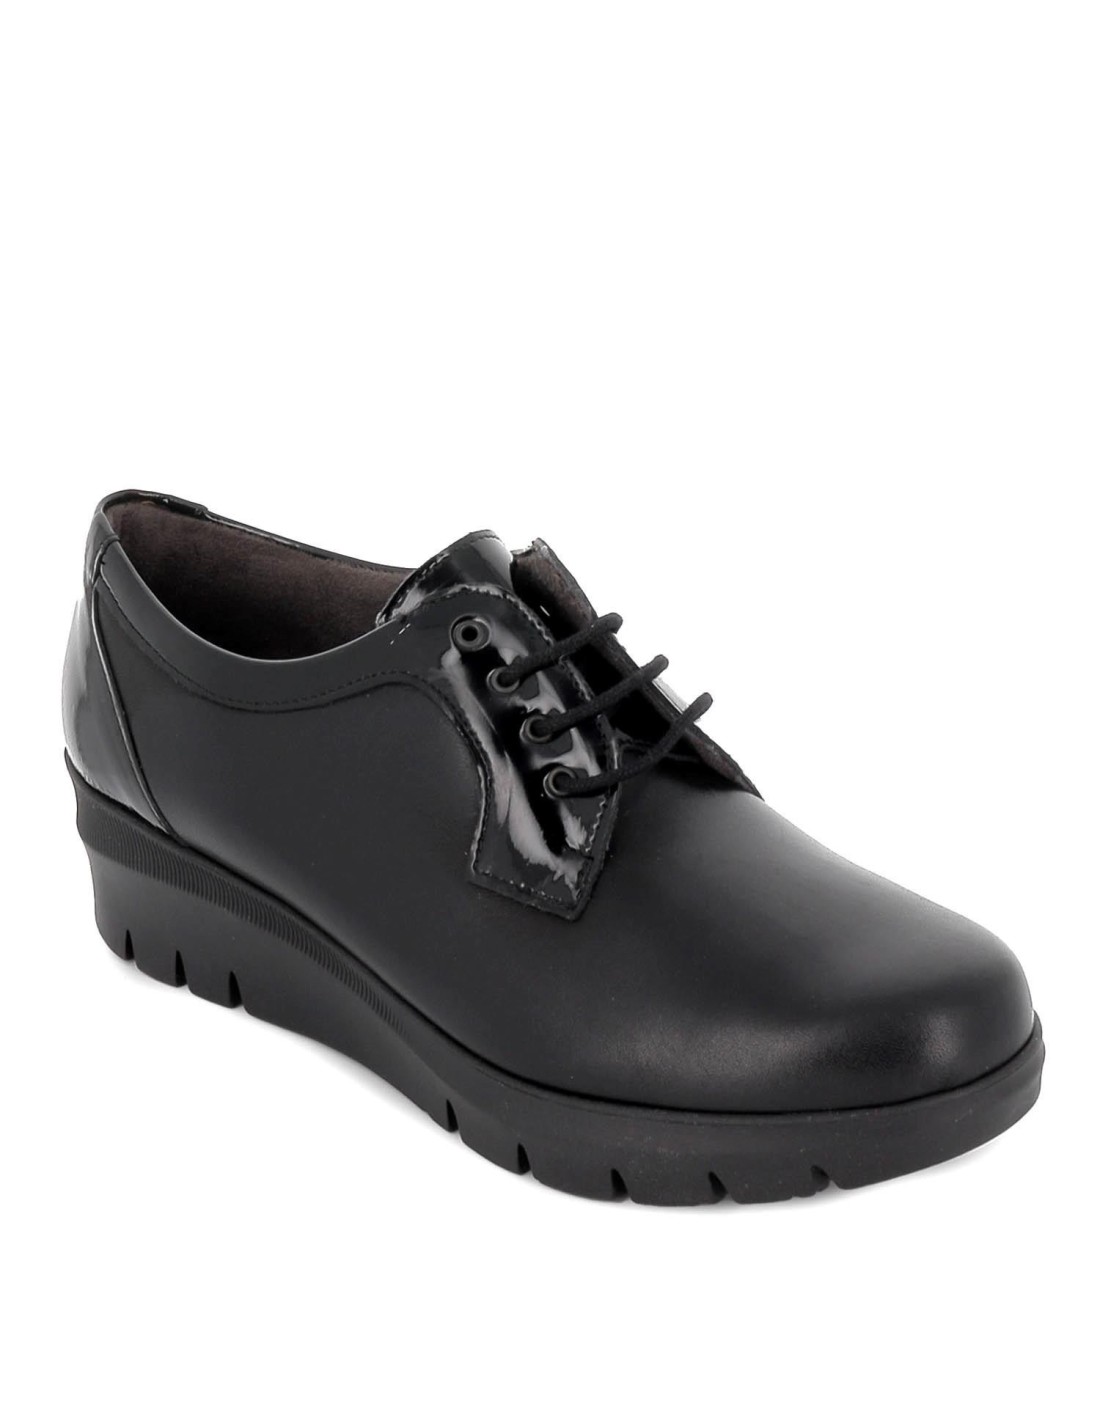 Zapato de mujer Pitillos en negro 2502 Color NEGRO Talla 40